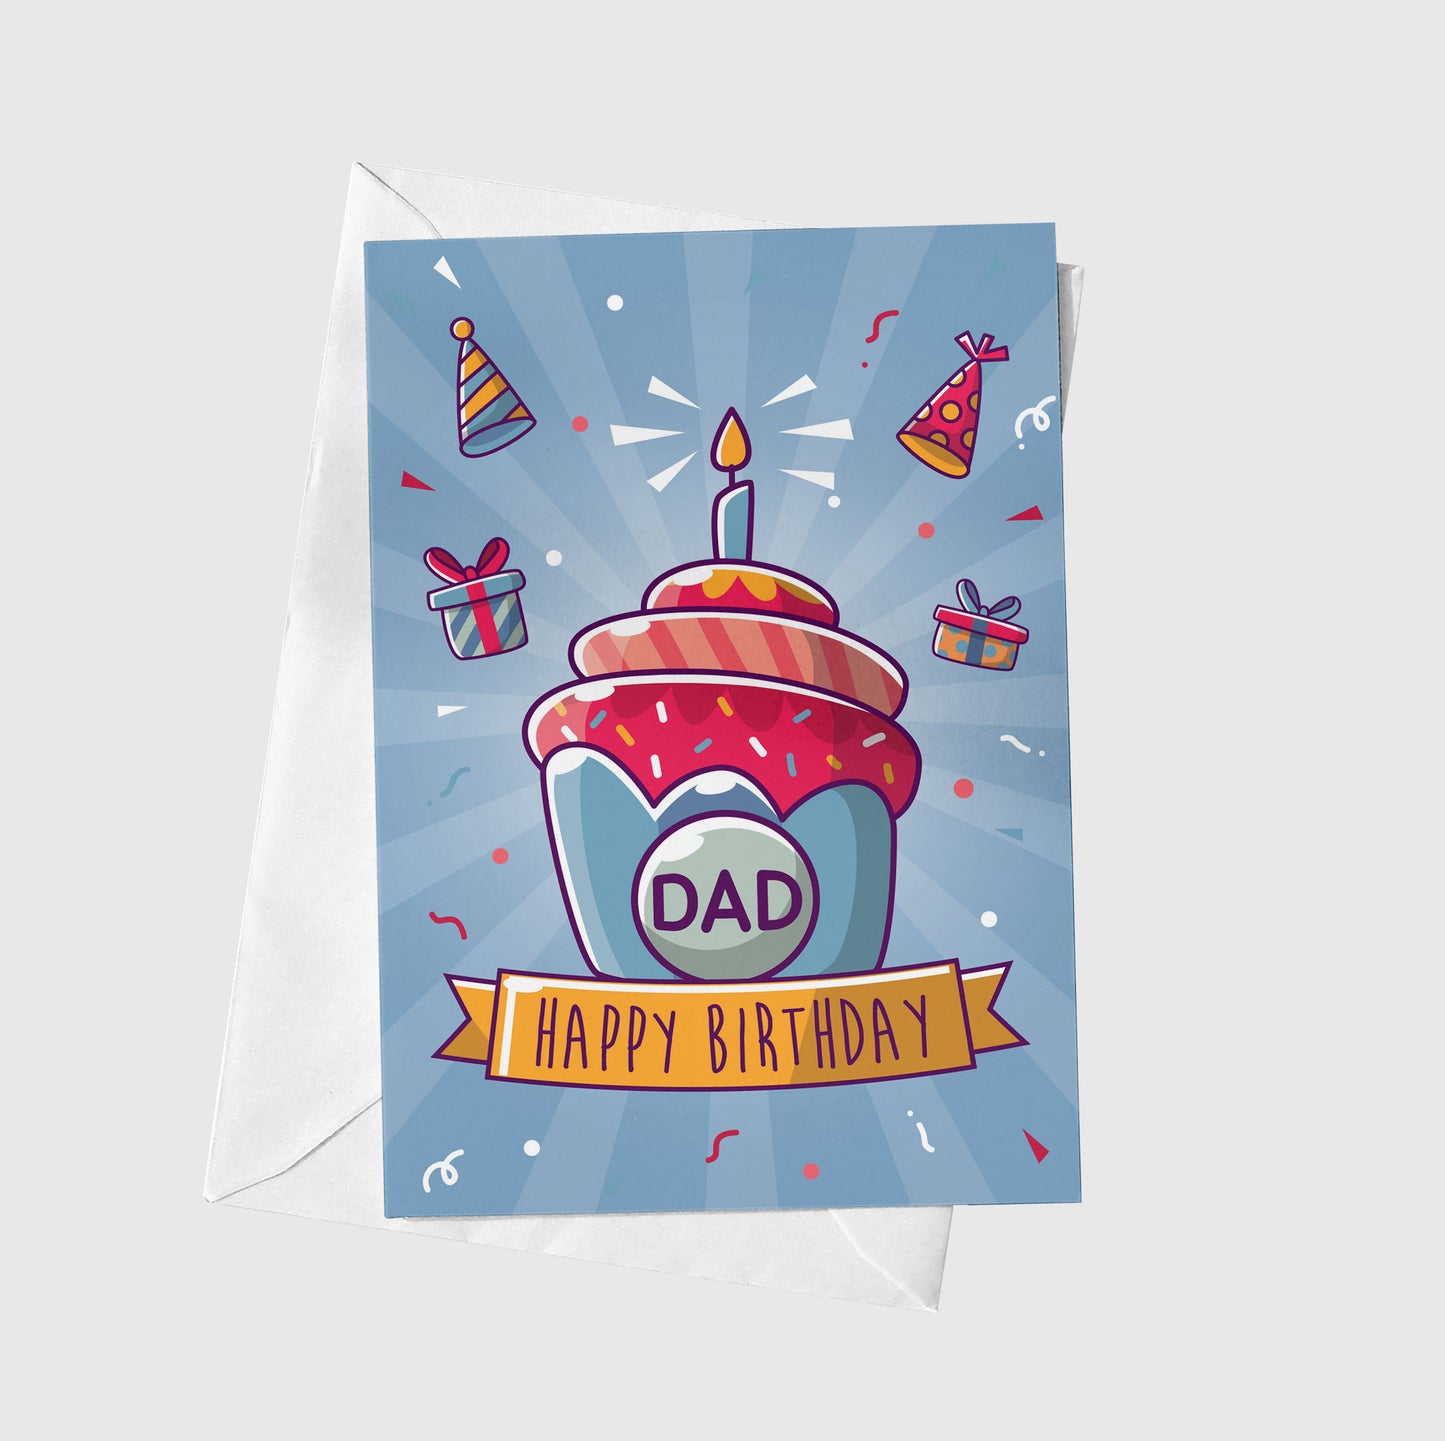 Dad - Happy Brithday